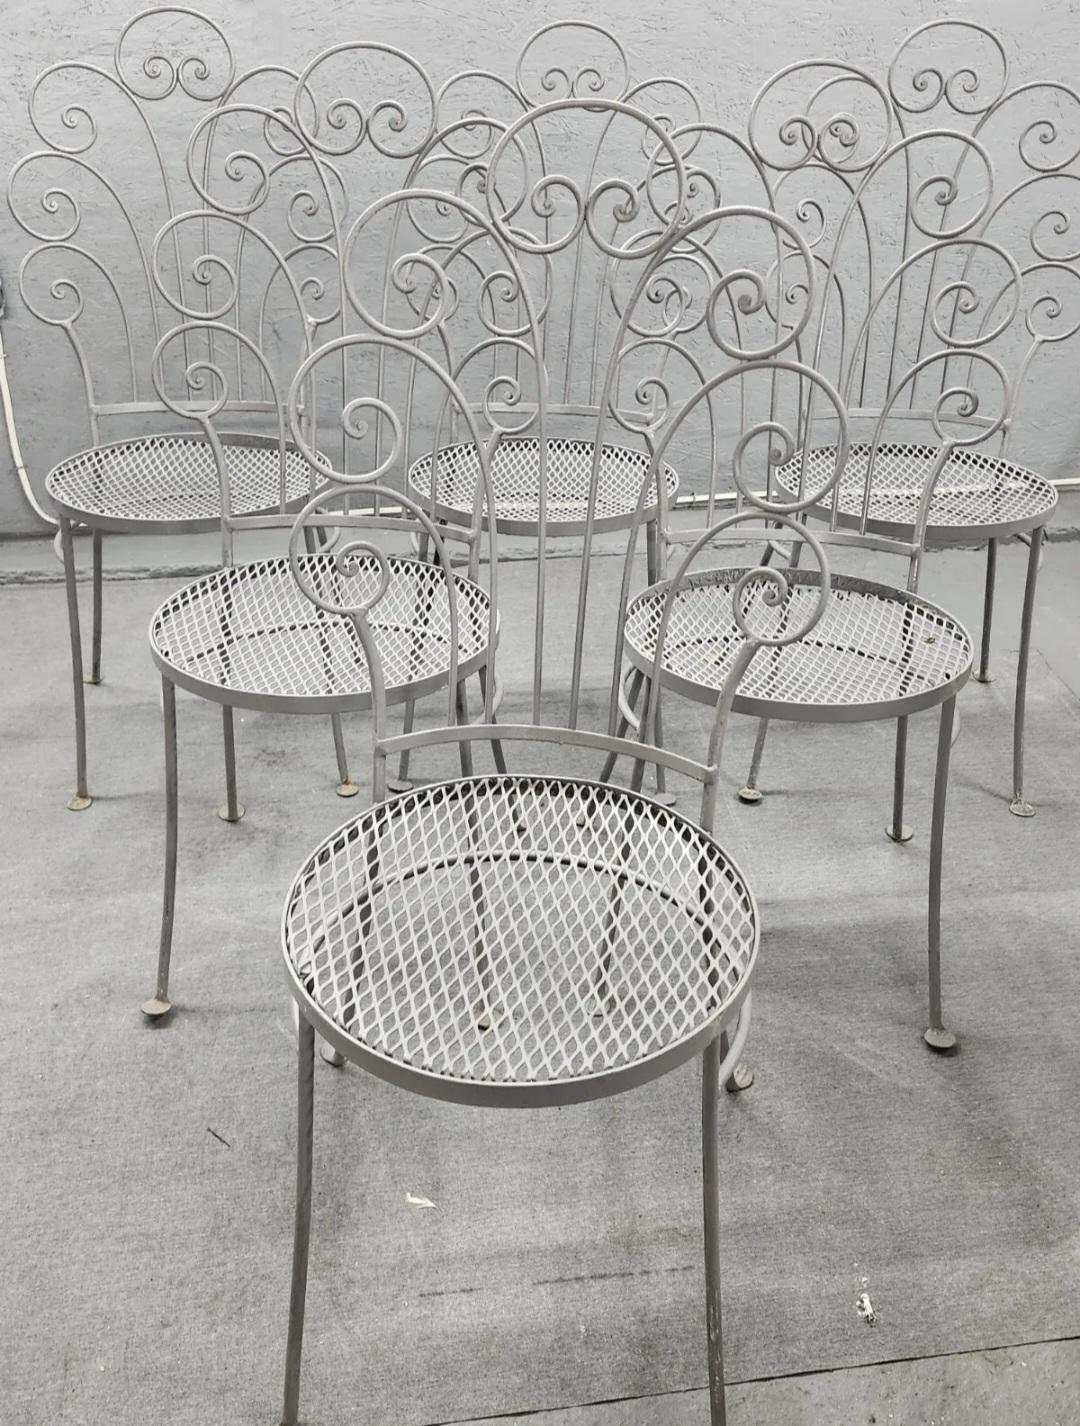 Ein fantastisches Set von 6 Salterini Stühlen steht zu Ihrer Auswahl. Sofort verfügbar und versandfertig. Perfekt für jede Terrasse, jeden Garten und jede Veranda. Kombinieren Sie das Set aus 6 schmiedeeisernen Stühlen mit 2 passenden Tischen, die